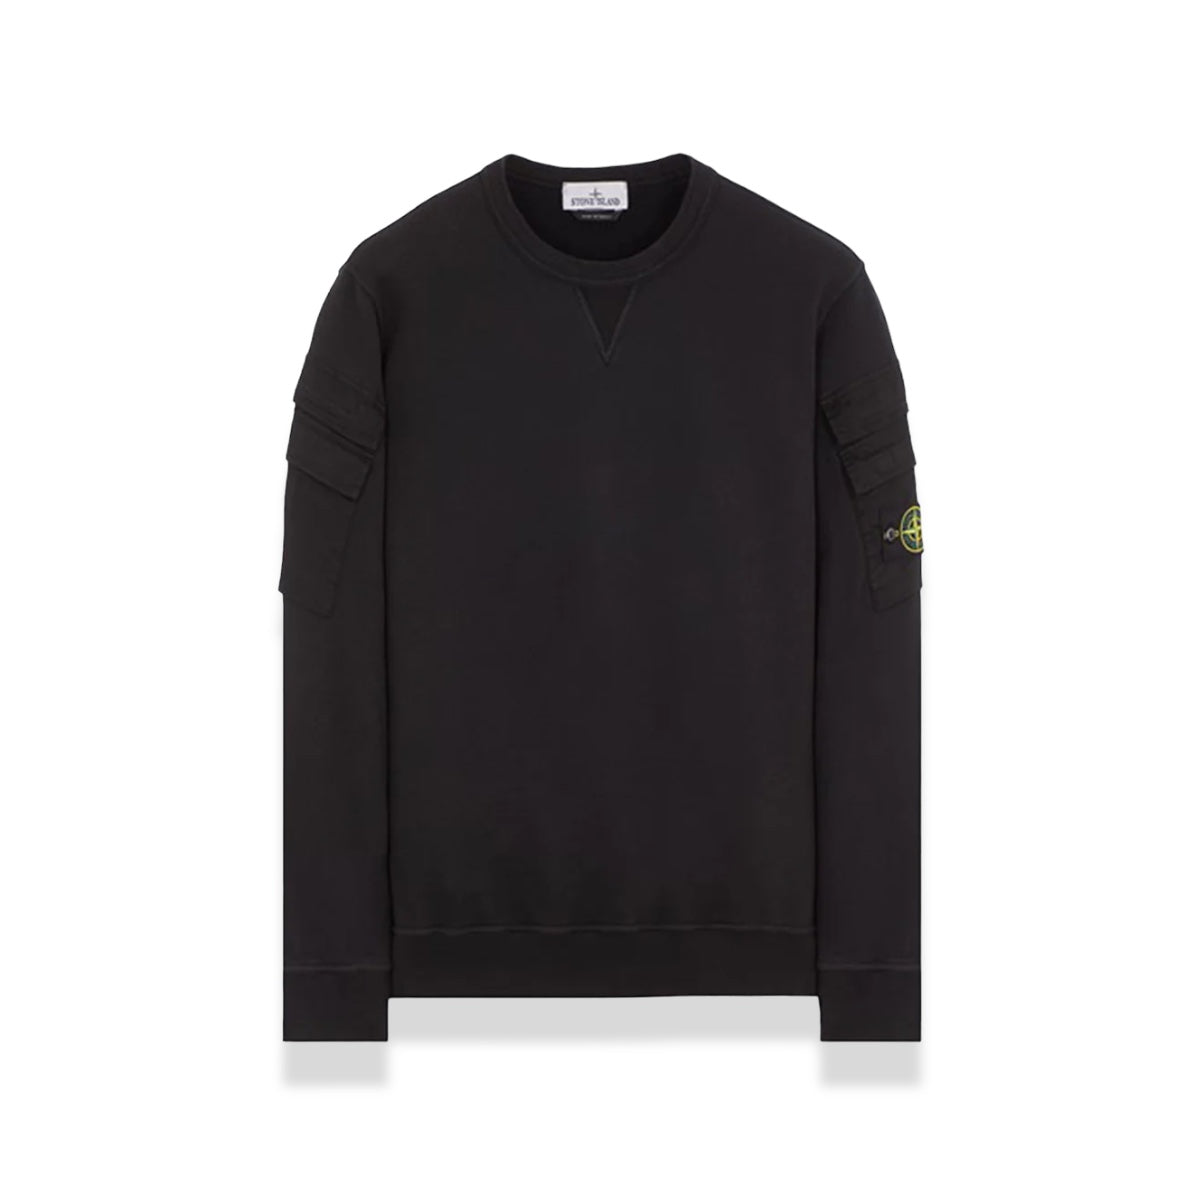 Stone Island - Brushed Cargo Sweater Black